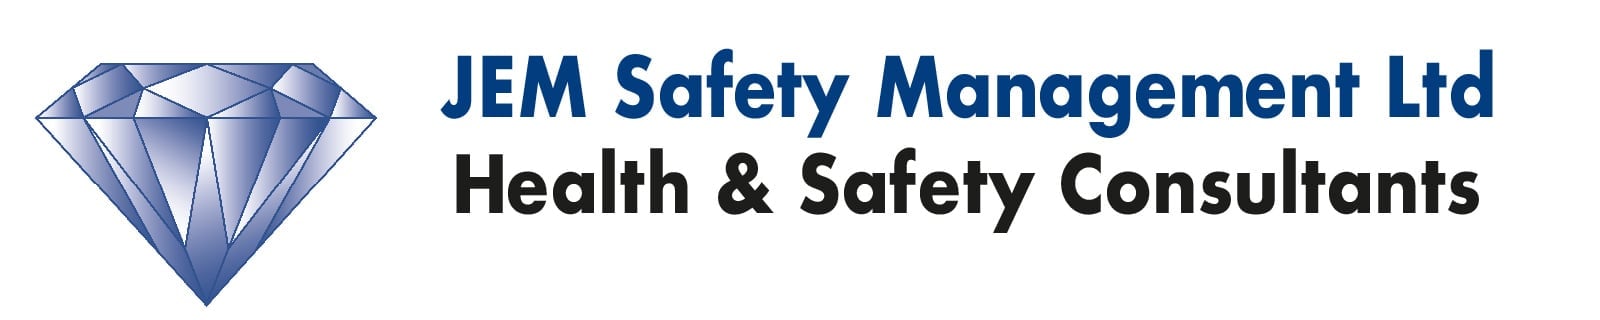 JEM Safety Management Ltd